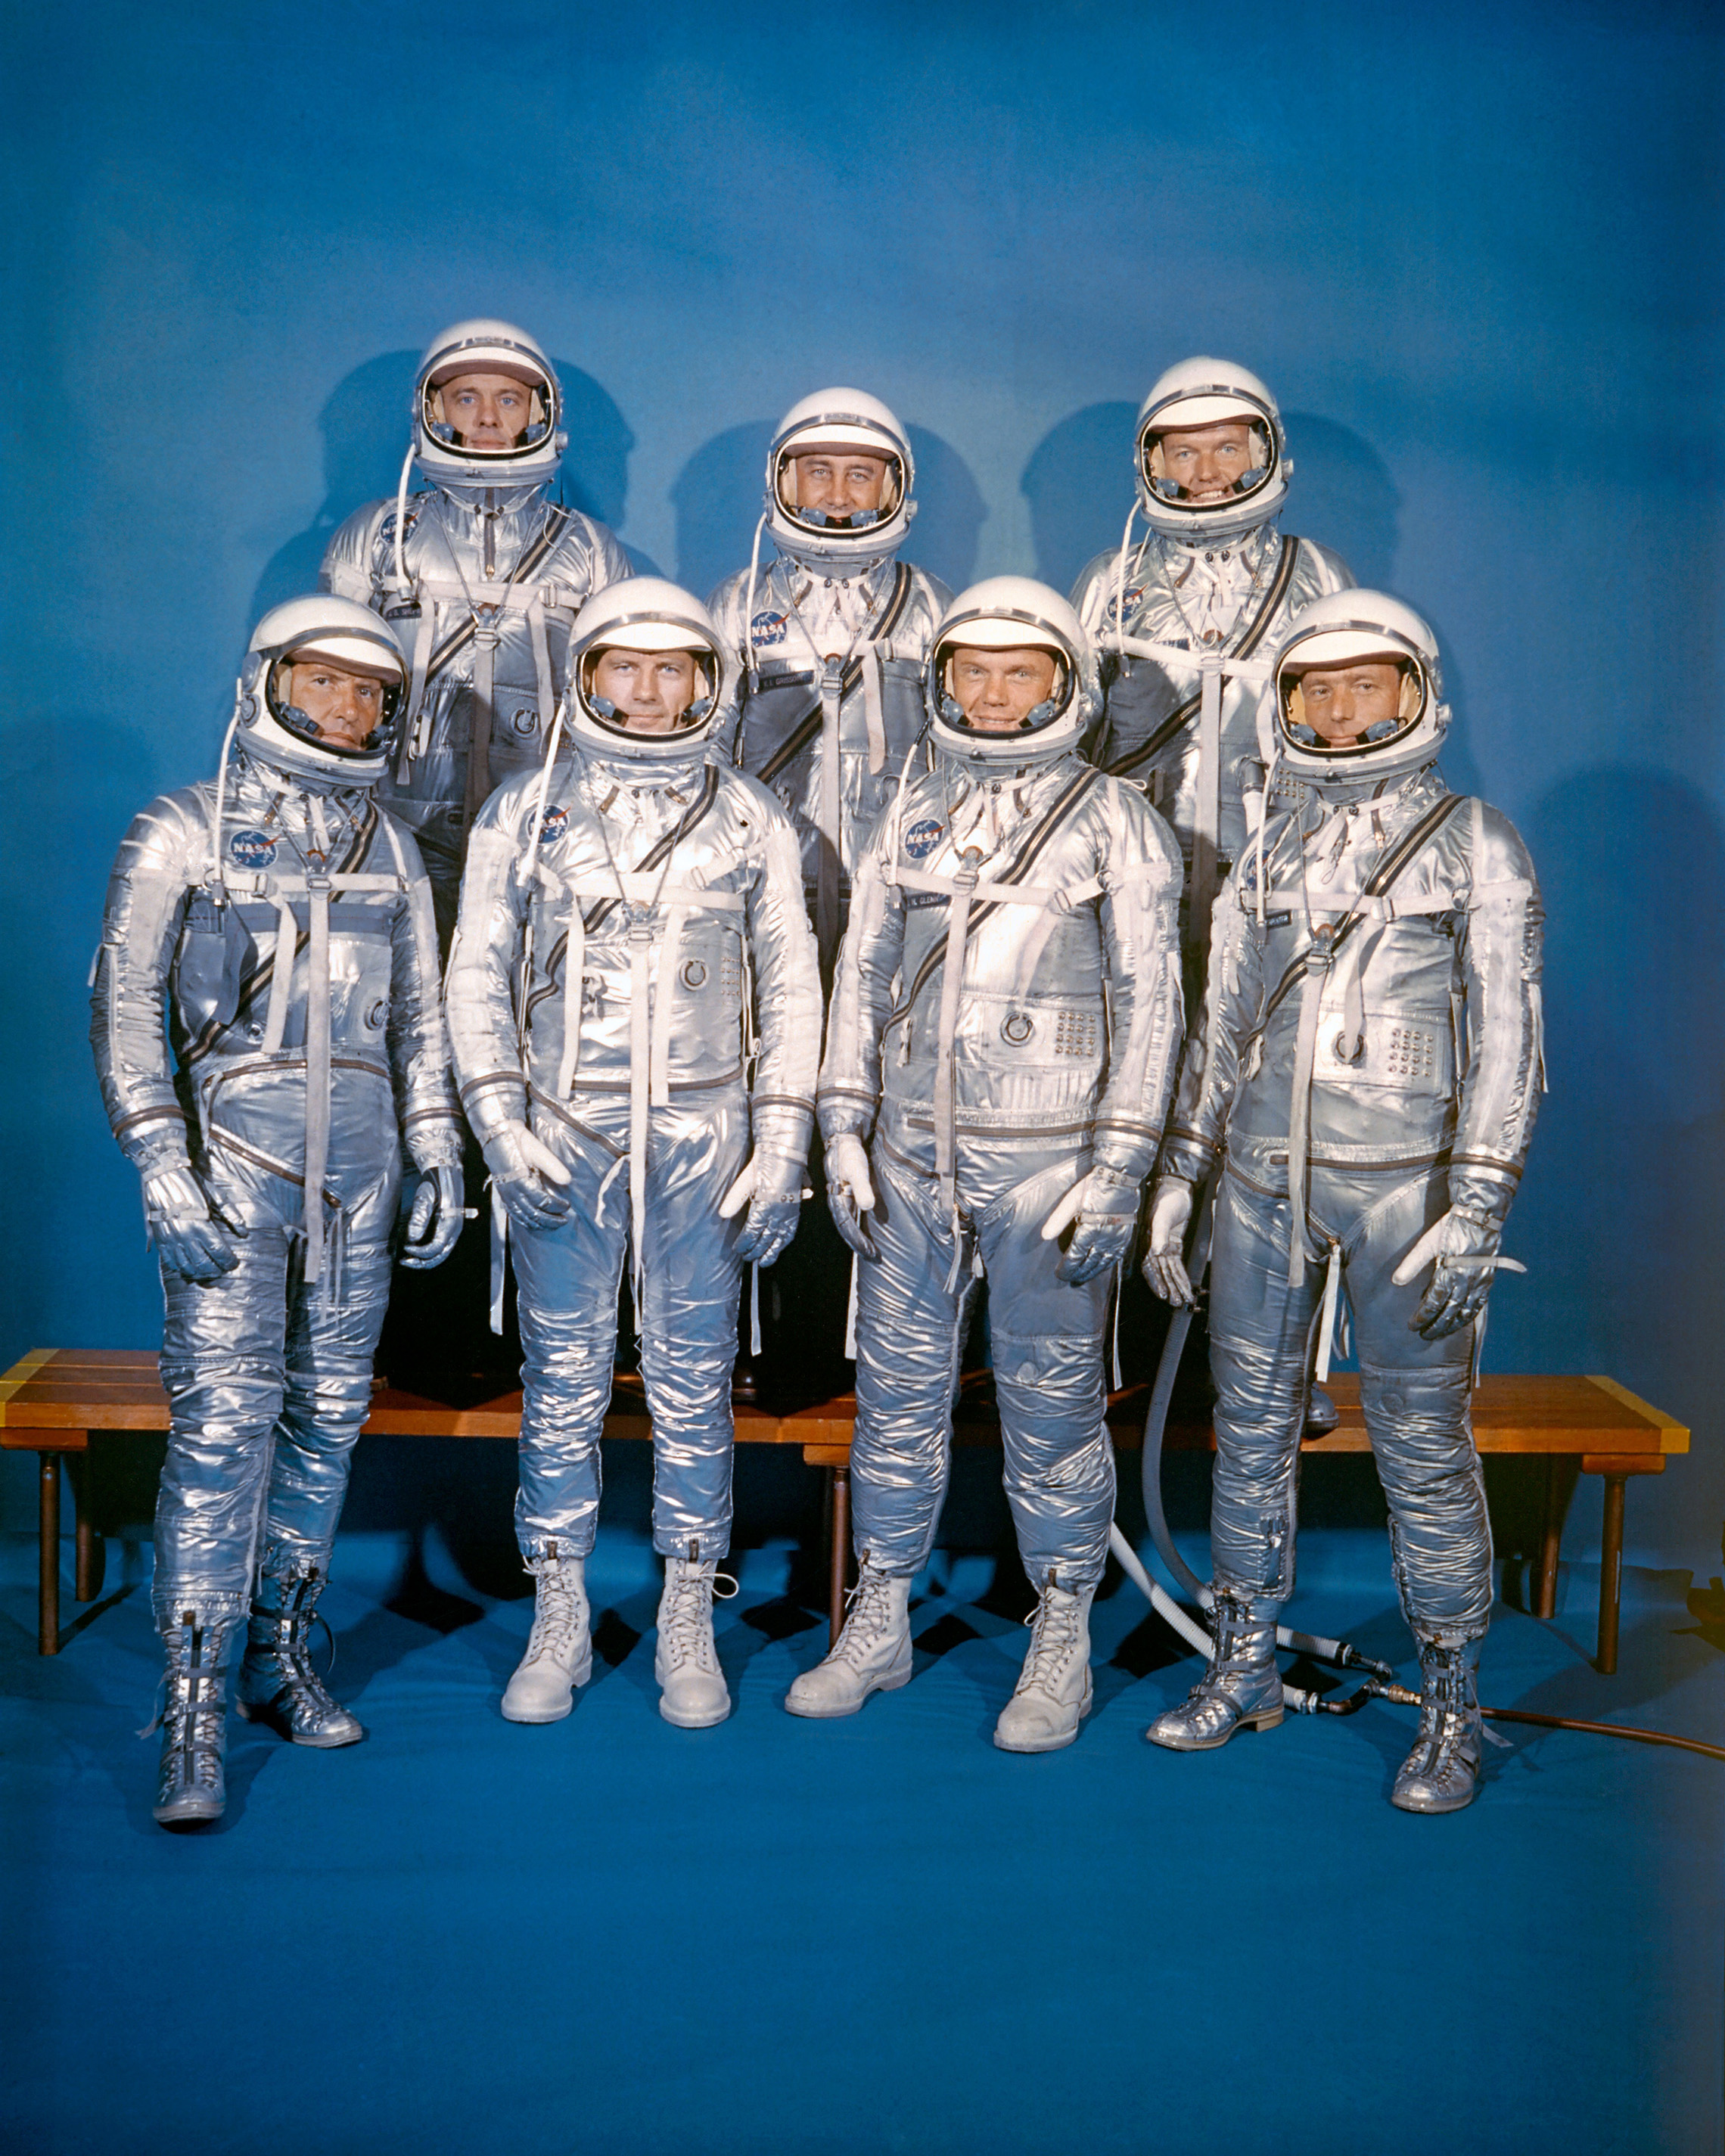 den 9.April 1959 introducerede NASA sin første astronautklasse, Mercury 7. M. Schirra, Jr., Donald K. "Deke" Slayton, John H. Glenn, Jr. og M. Scott Carpenter; bageste række, Alan B. Shepard, Jr., Virgil I. "Gus" Grissomog L. Gordon Cooper, Jr. (NASA)"Deke" Slayton, John H. Glenn, Jr., and M. Scott Carpenter; back row, Alan B. Shepard, Jr., Virgil I. "Gus" Grissom, and L. Gordon Cooper, Jr. (NASA)